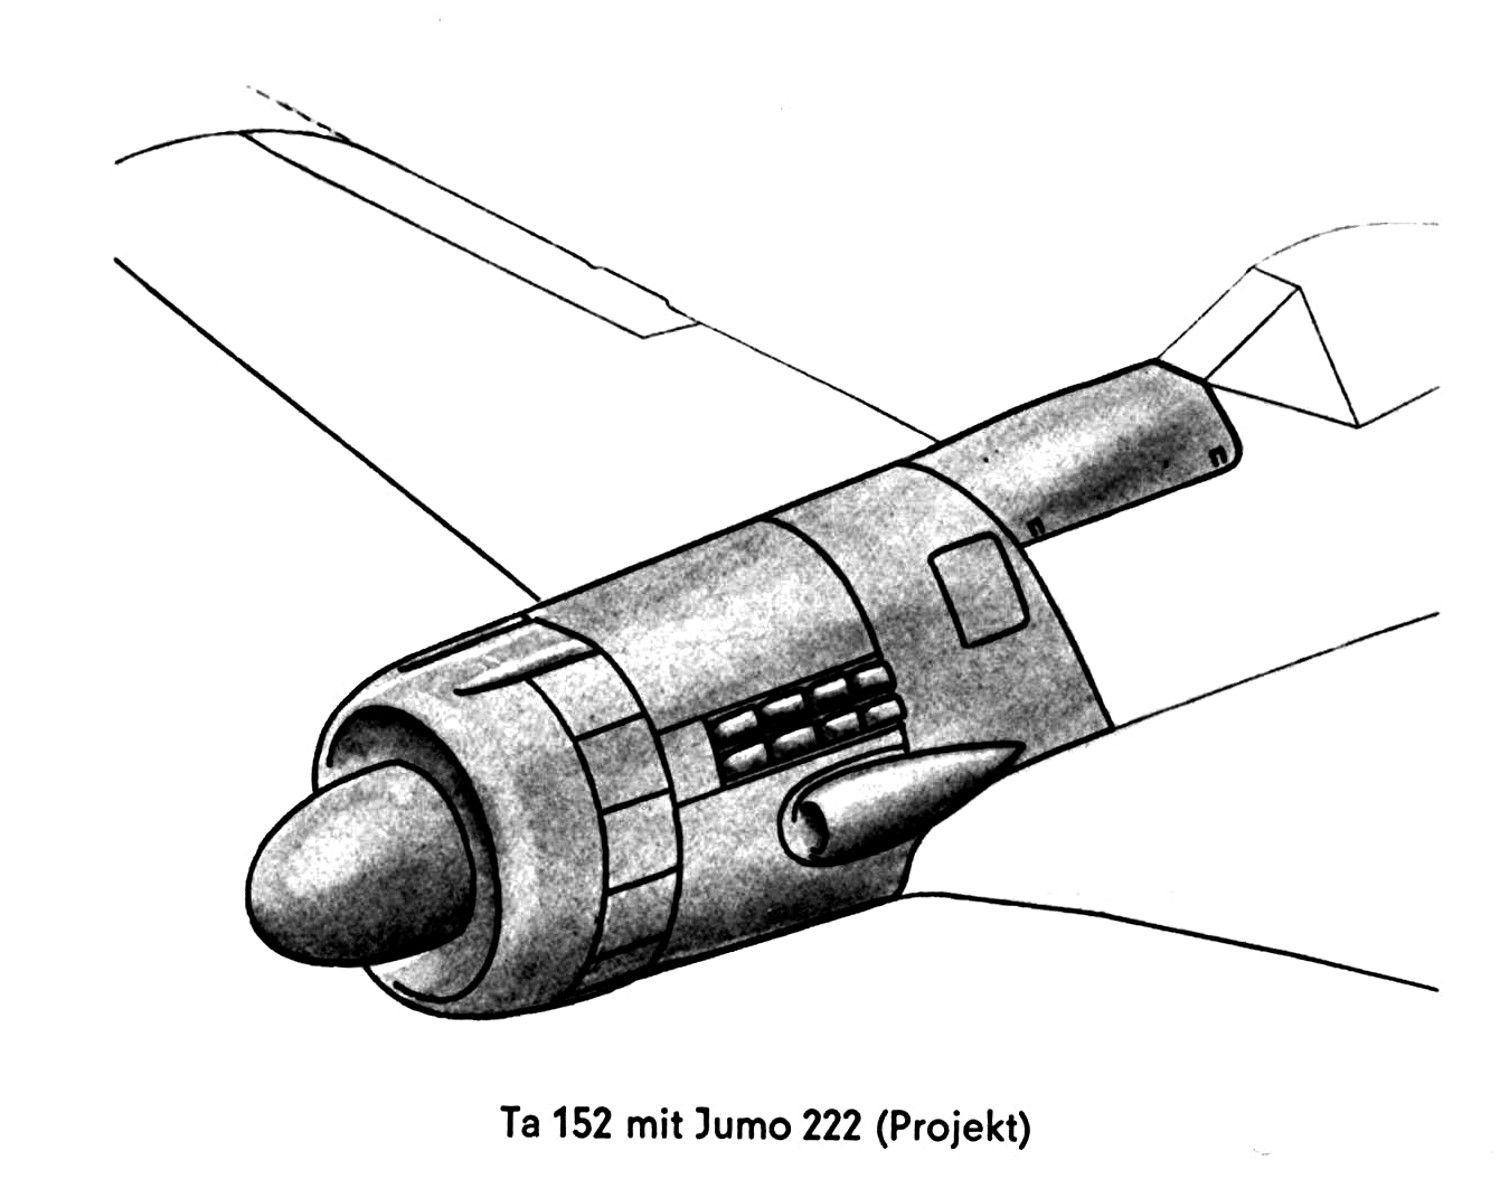 ta-152-mit-jumo-222-projekt-jpg.467382